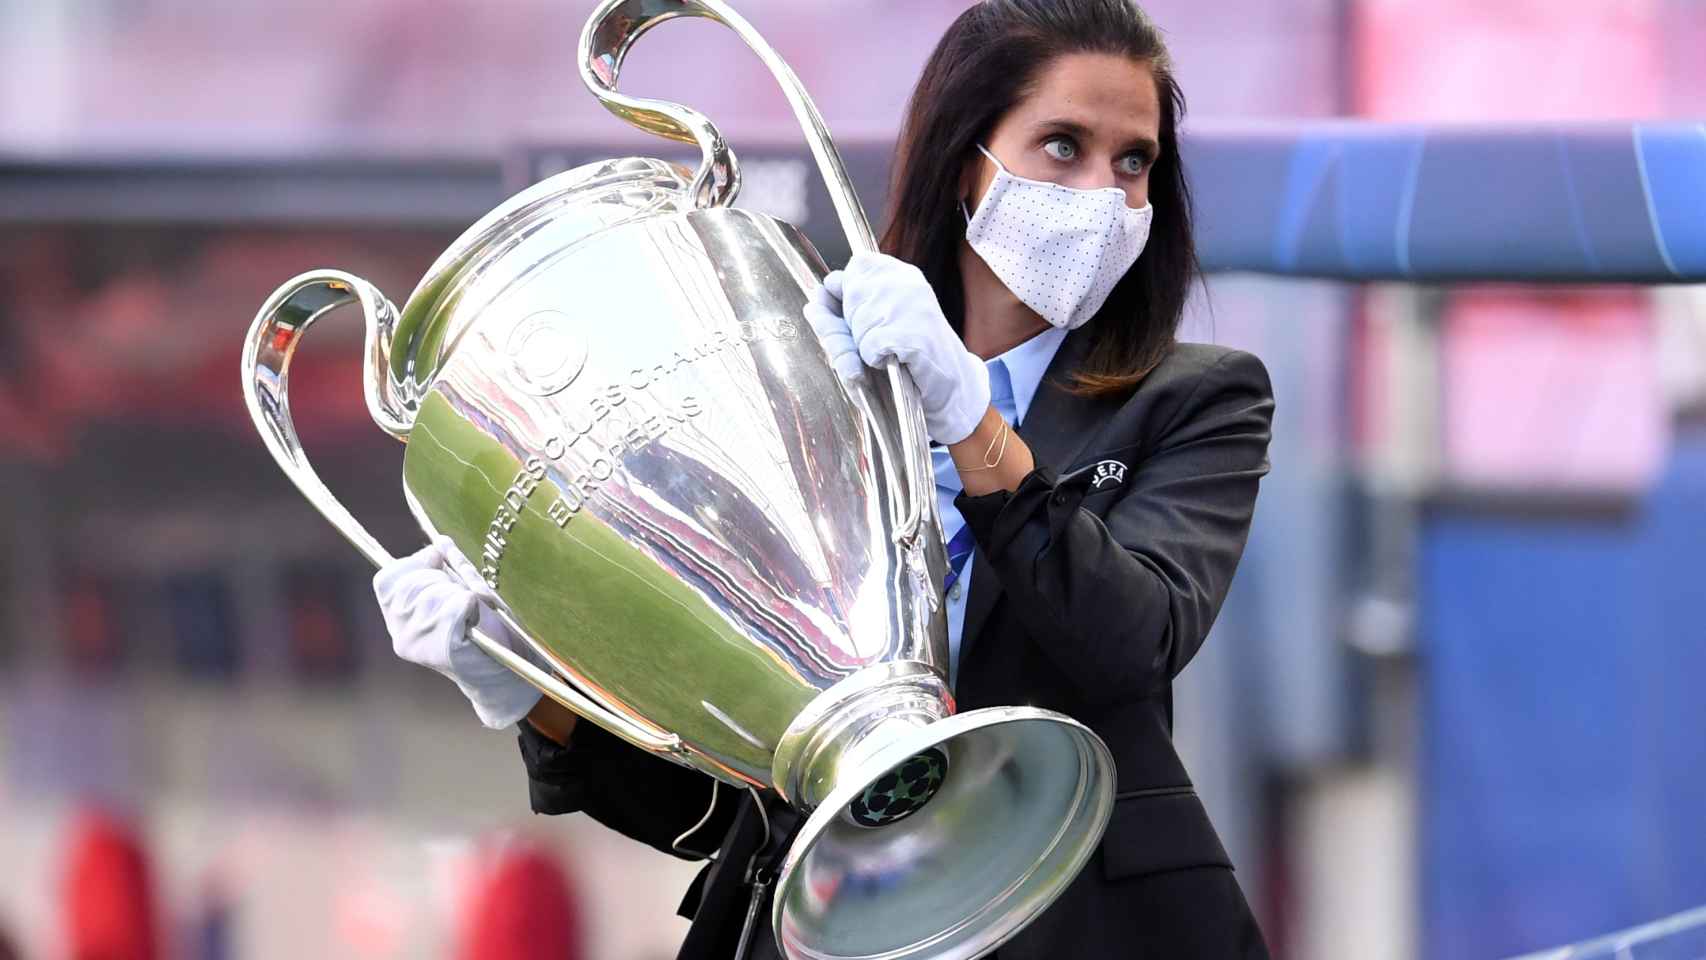 Un miembro de la organización traslada el trofeo de la Champions League